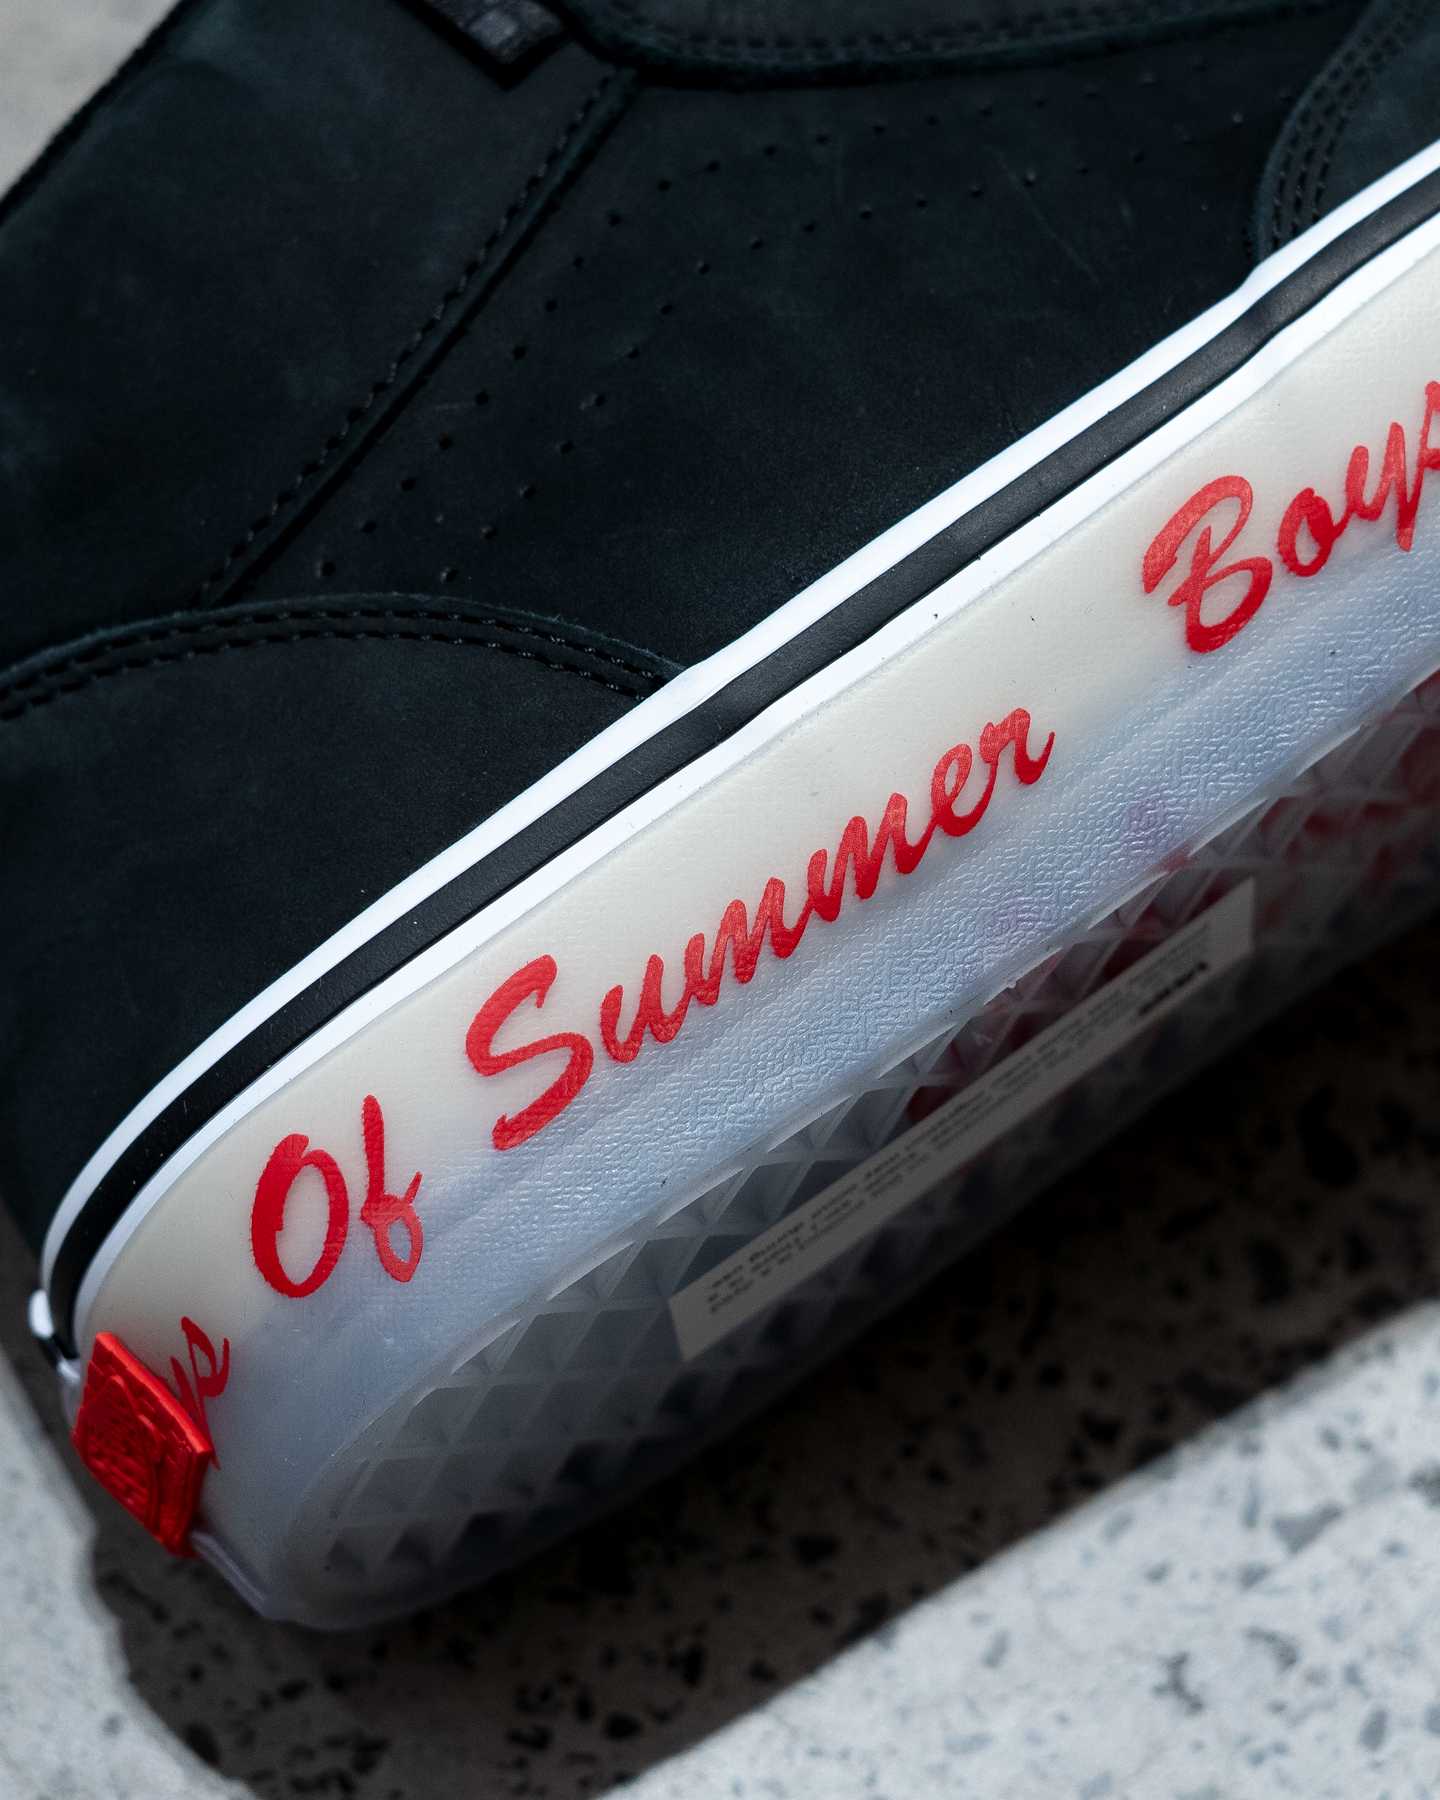 boys of summer branding on side of vans mc skate shoe